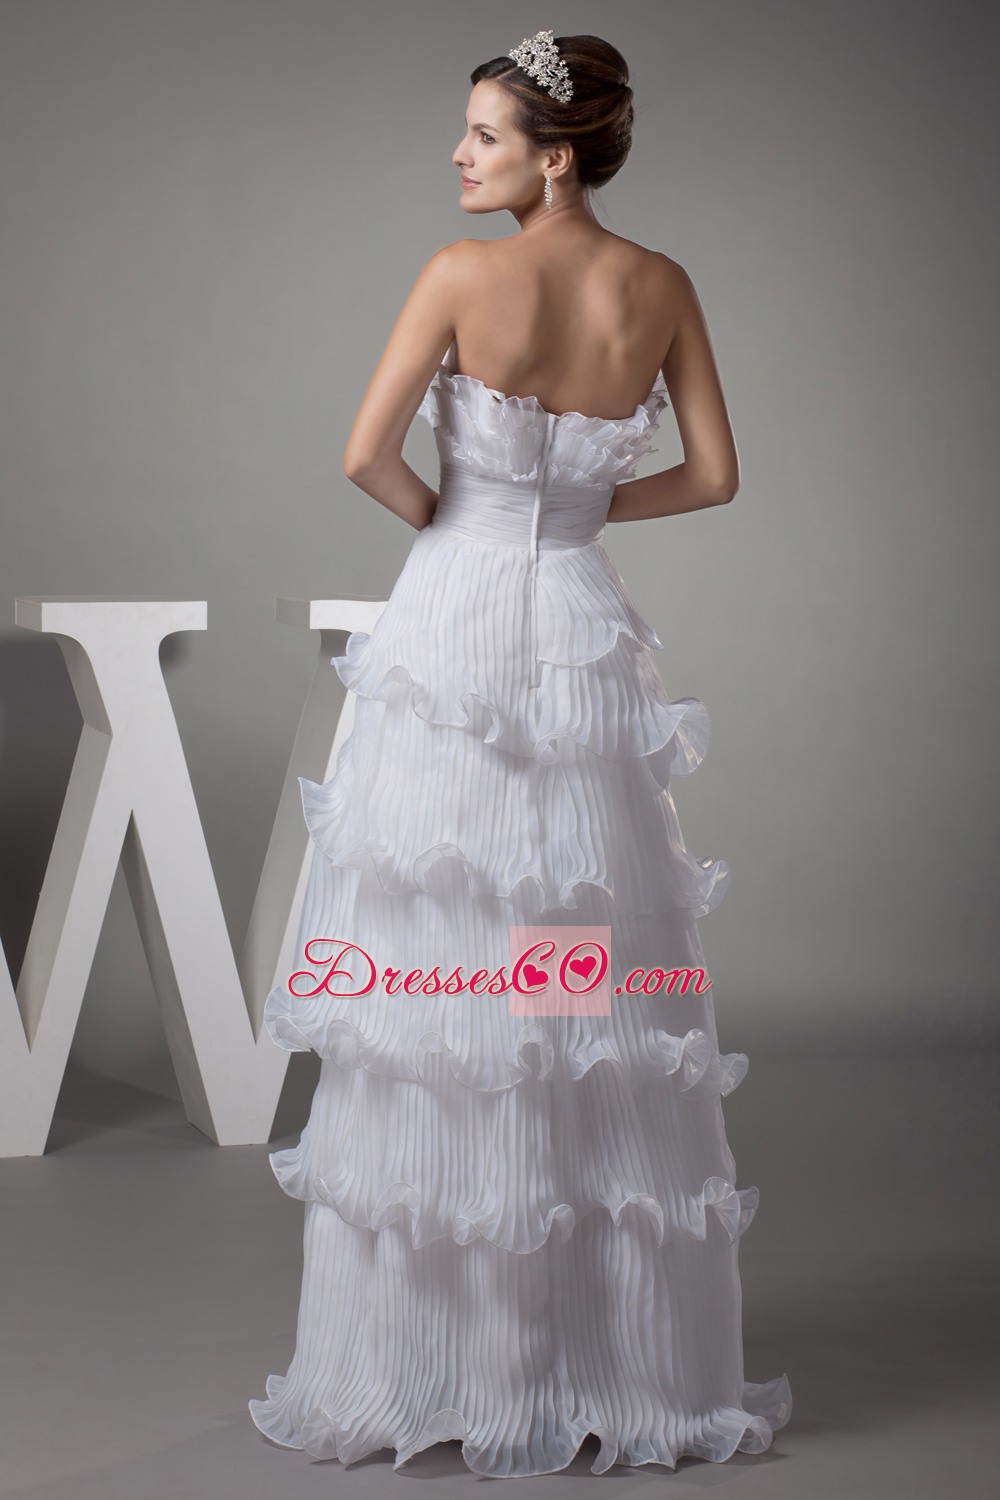 Ruffles Column / Sheath Strapless Long Wedding Dress